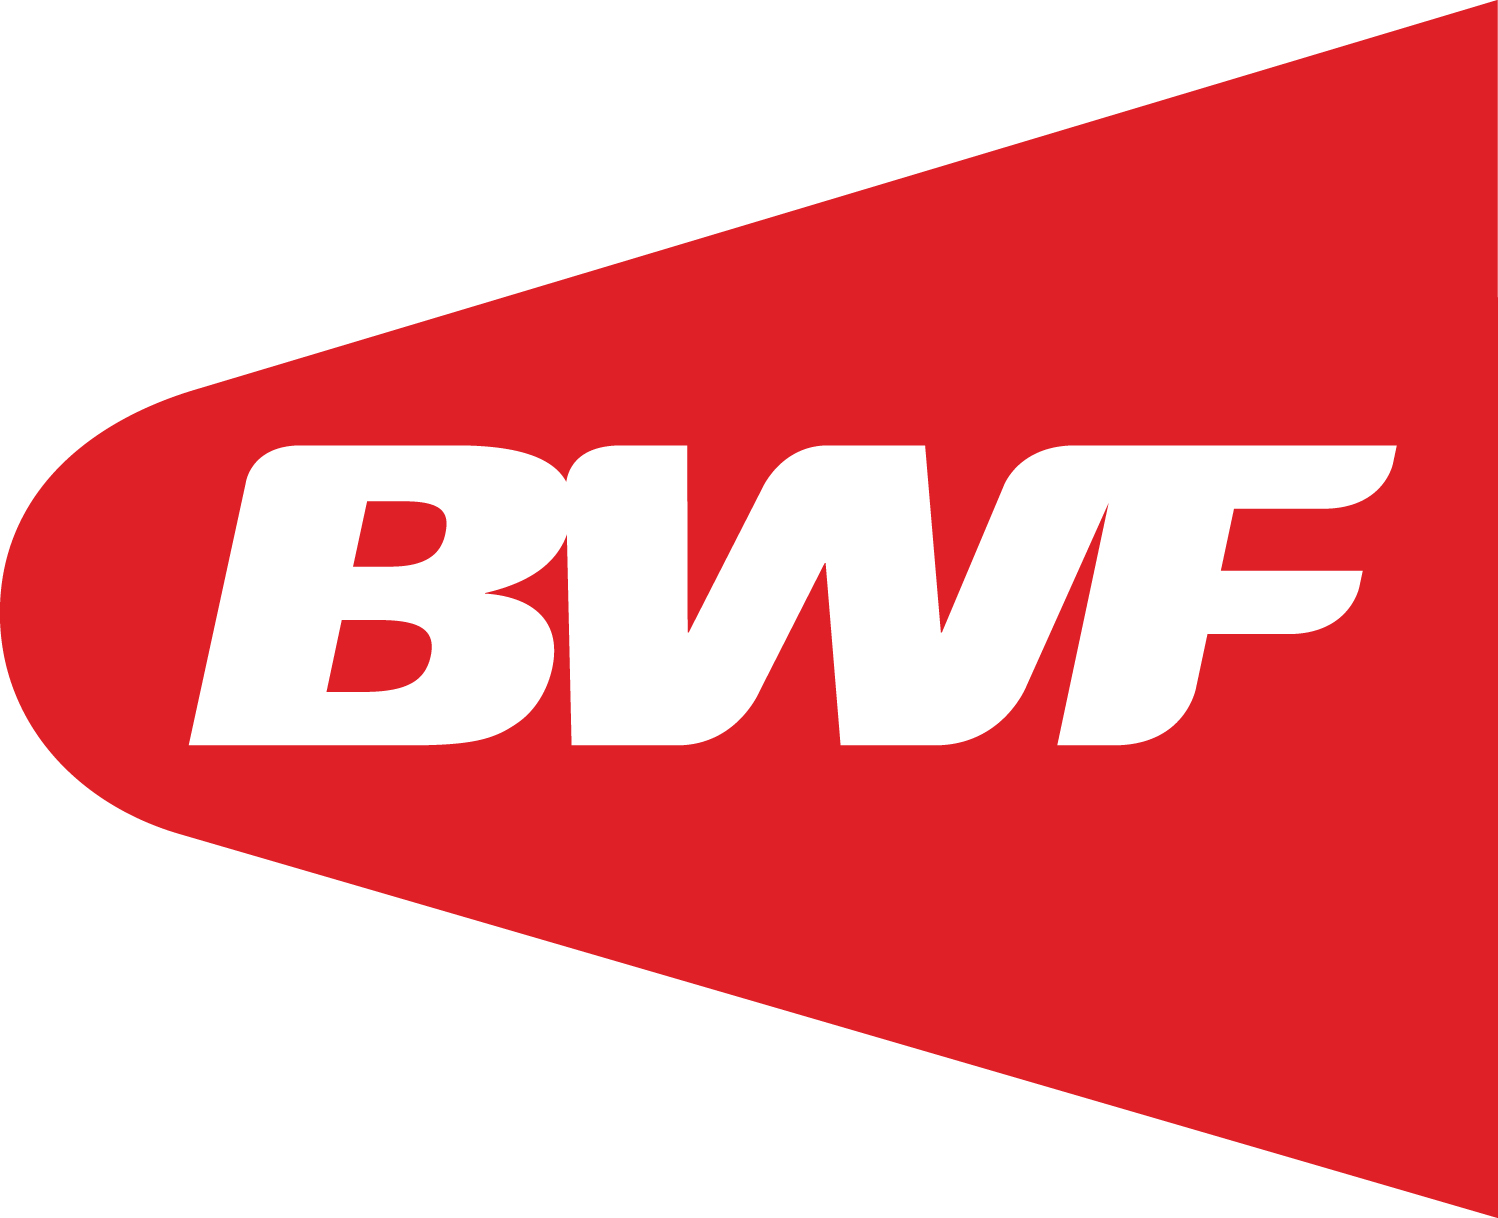 BWF logo